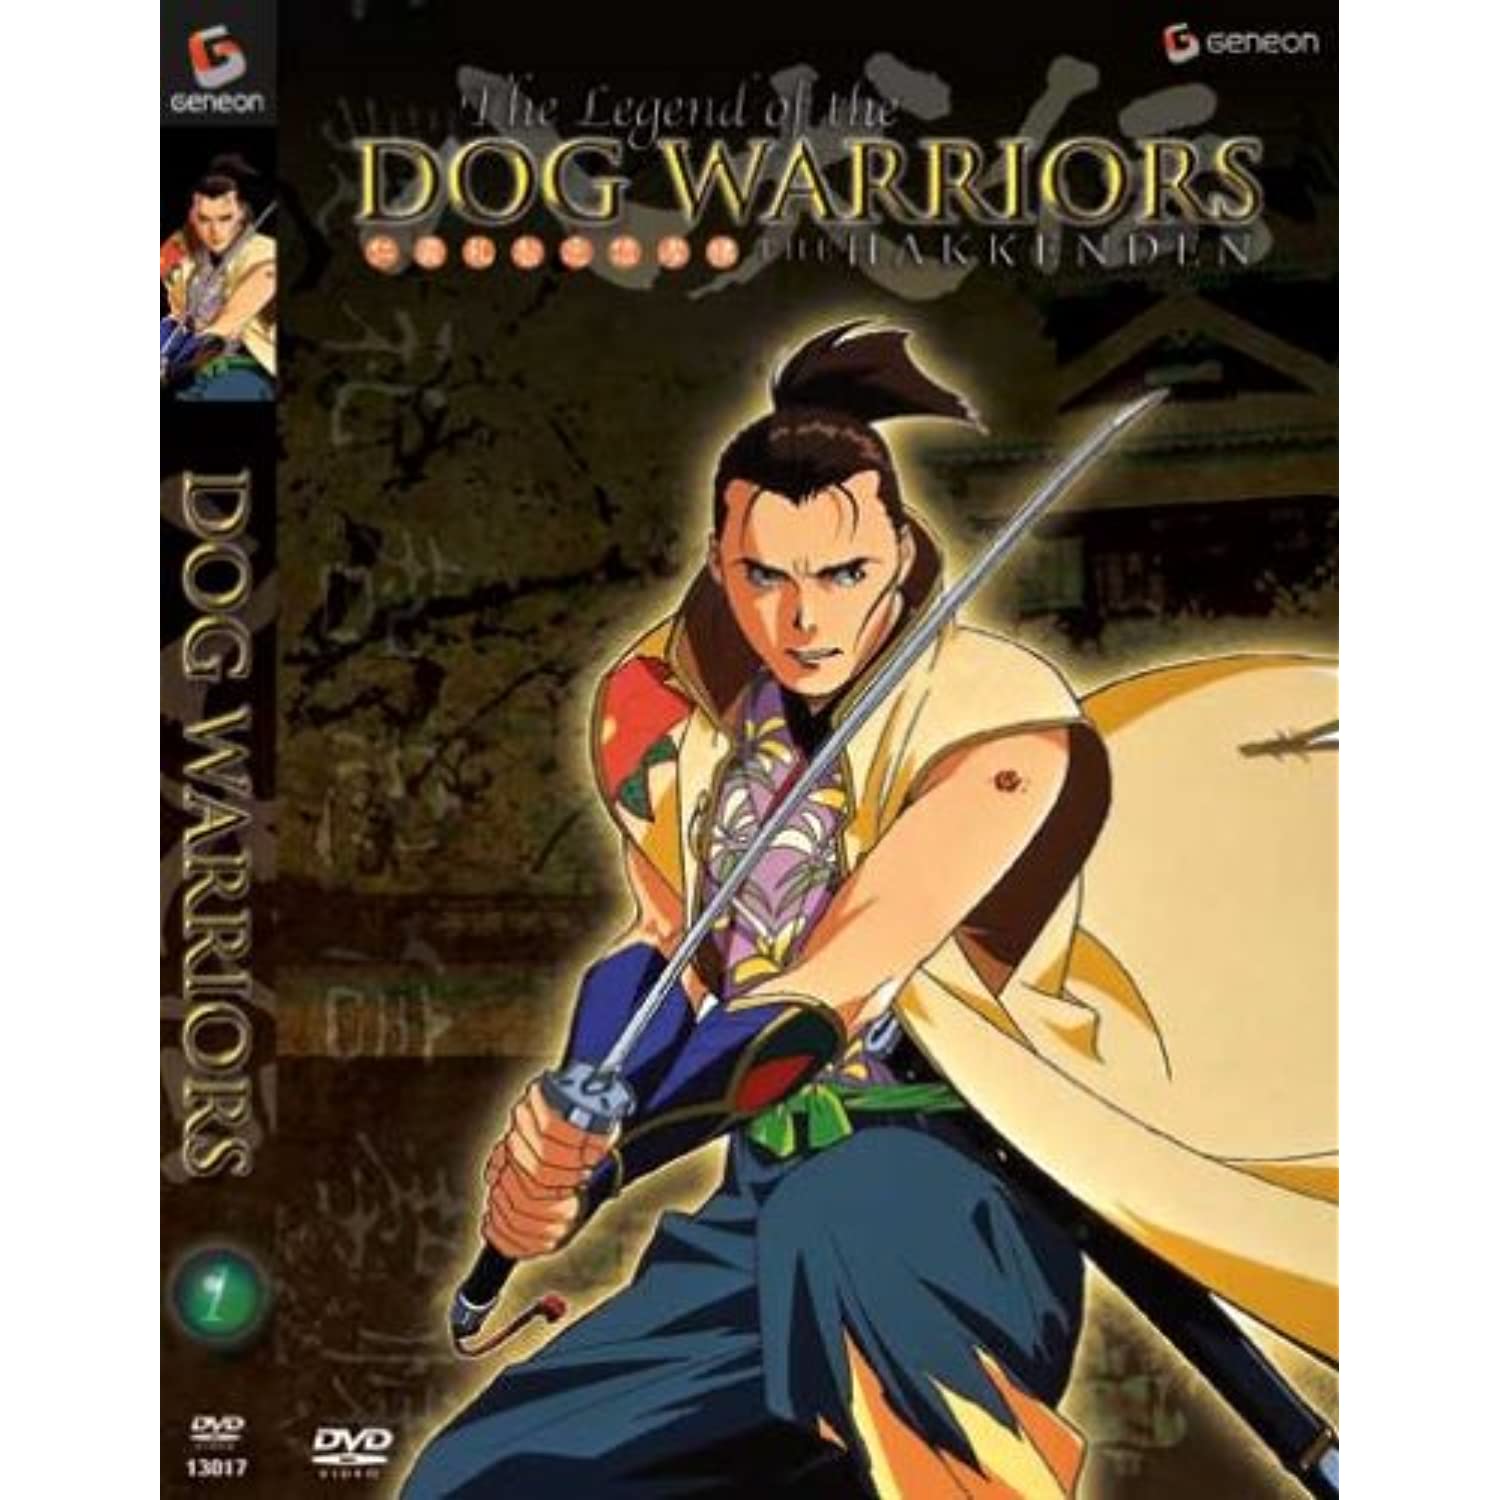 Dog Warriors -The Hakkenden, Vol. 1 DVD